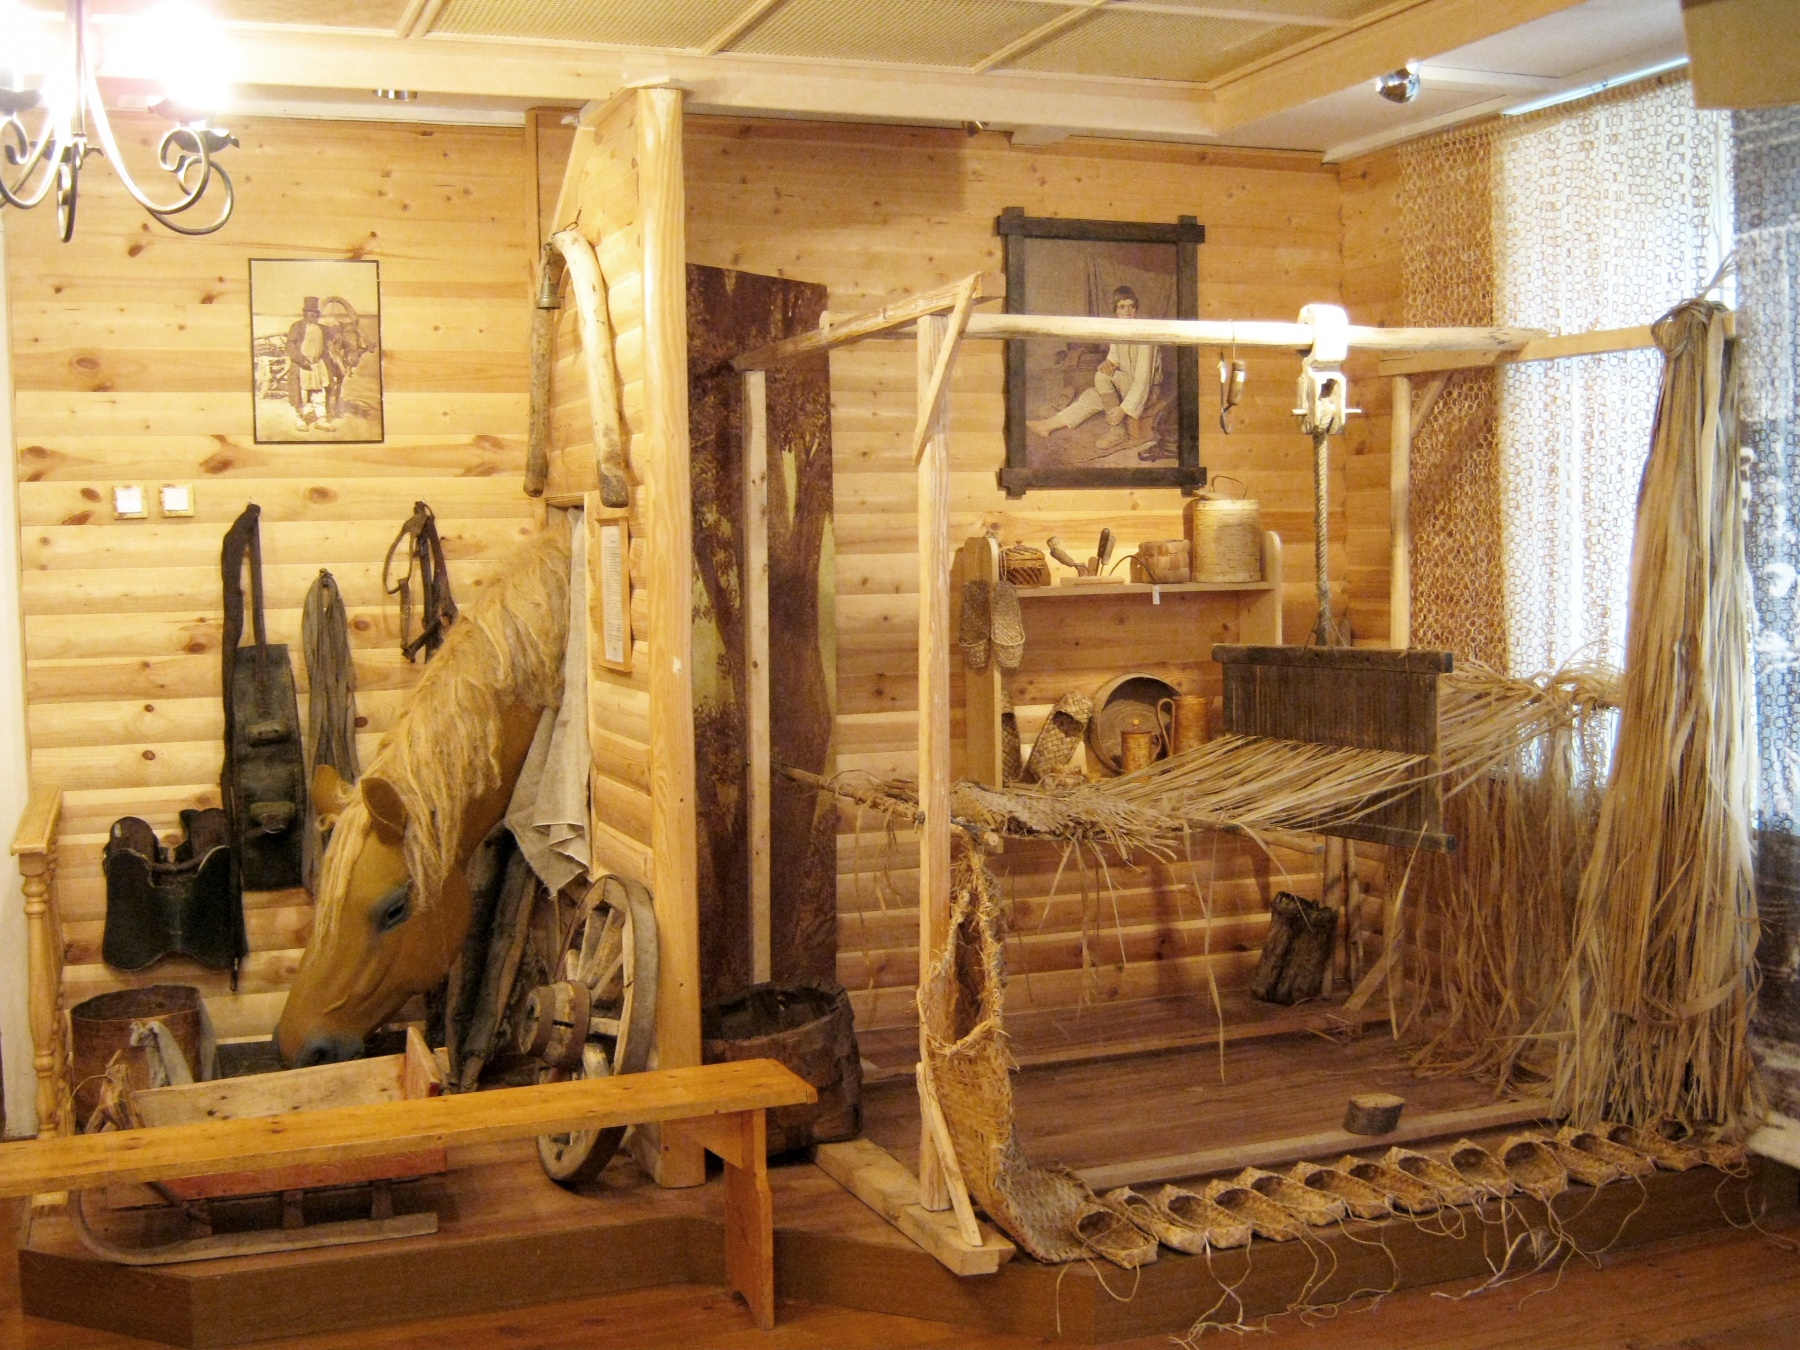 Музей «Столярная мастерская»

